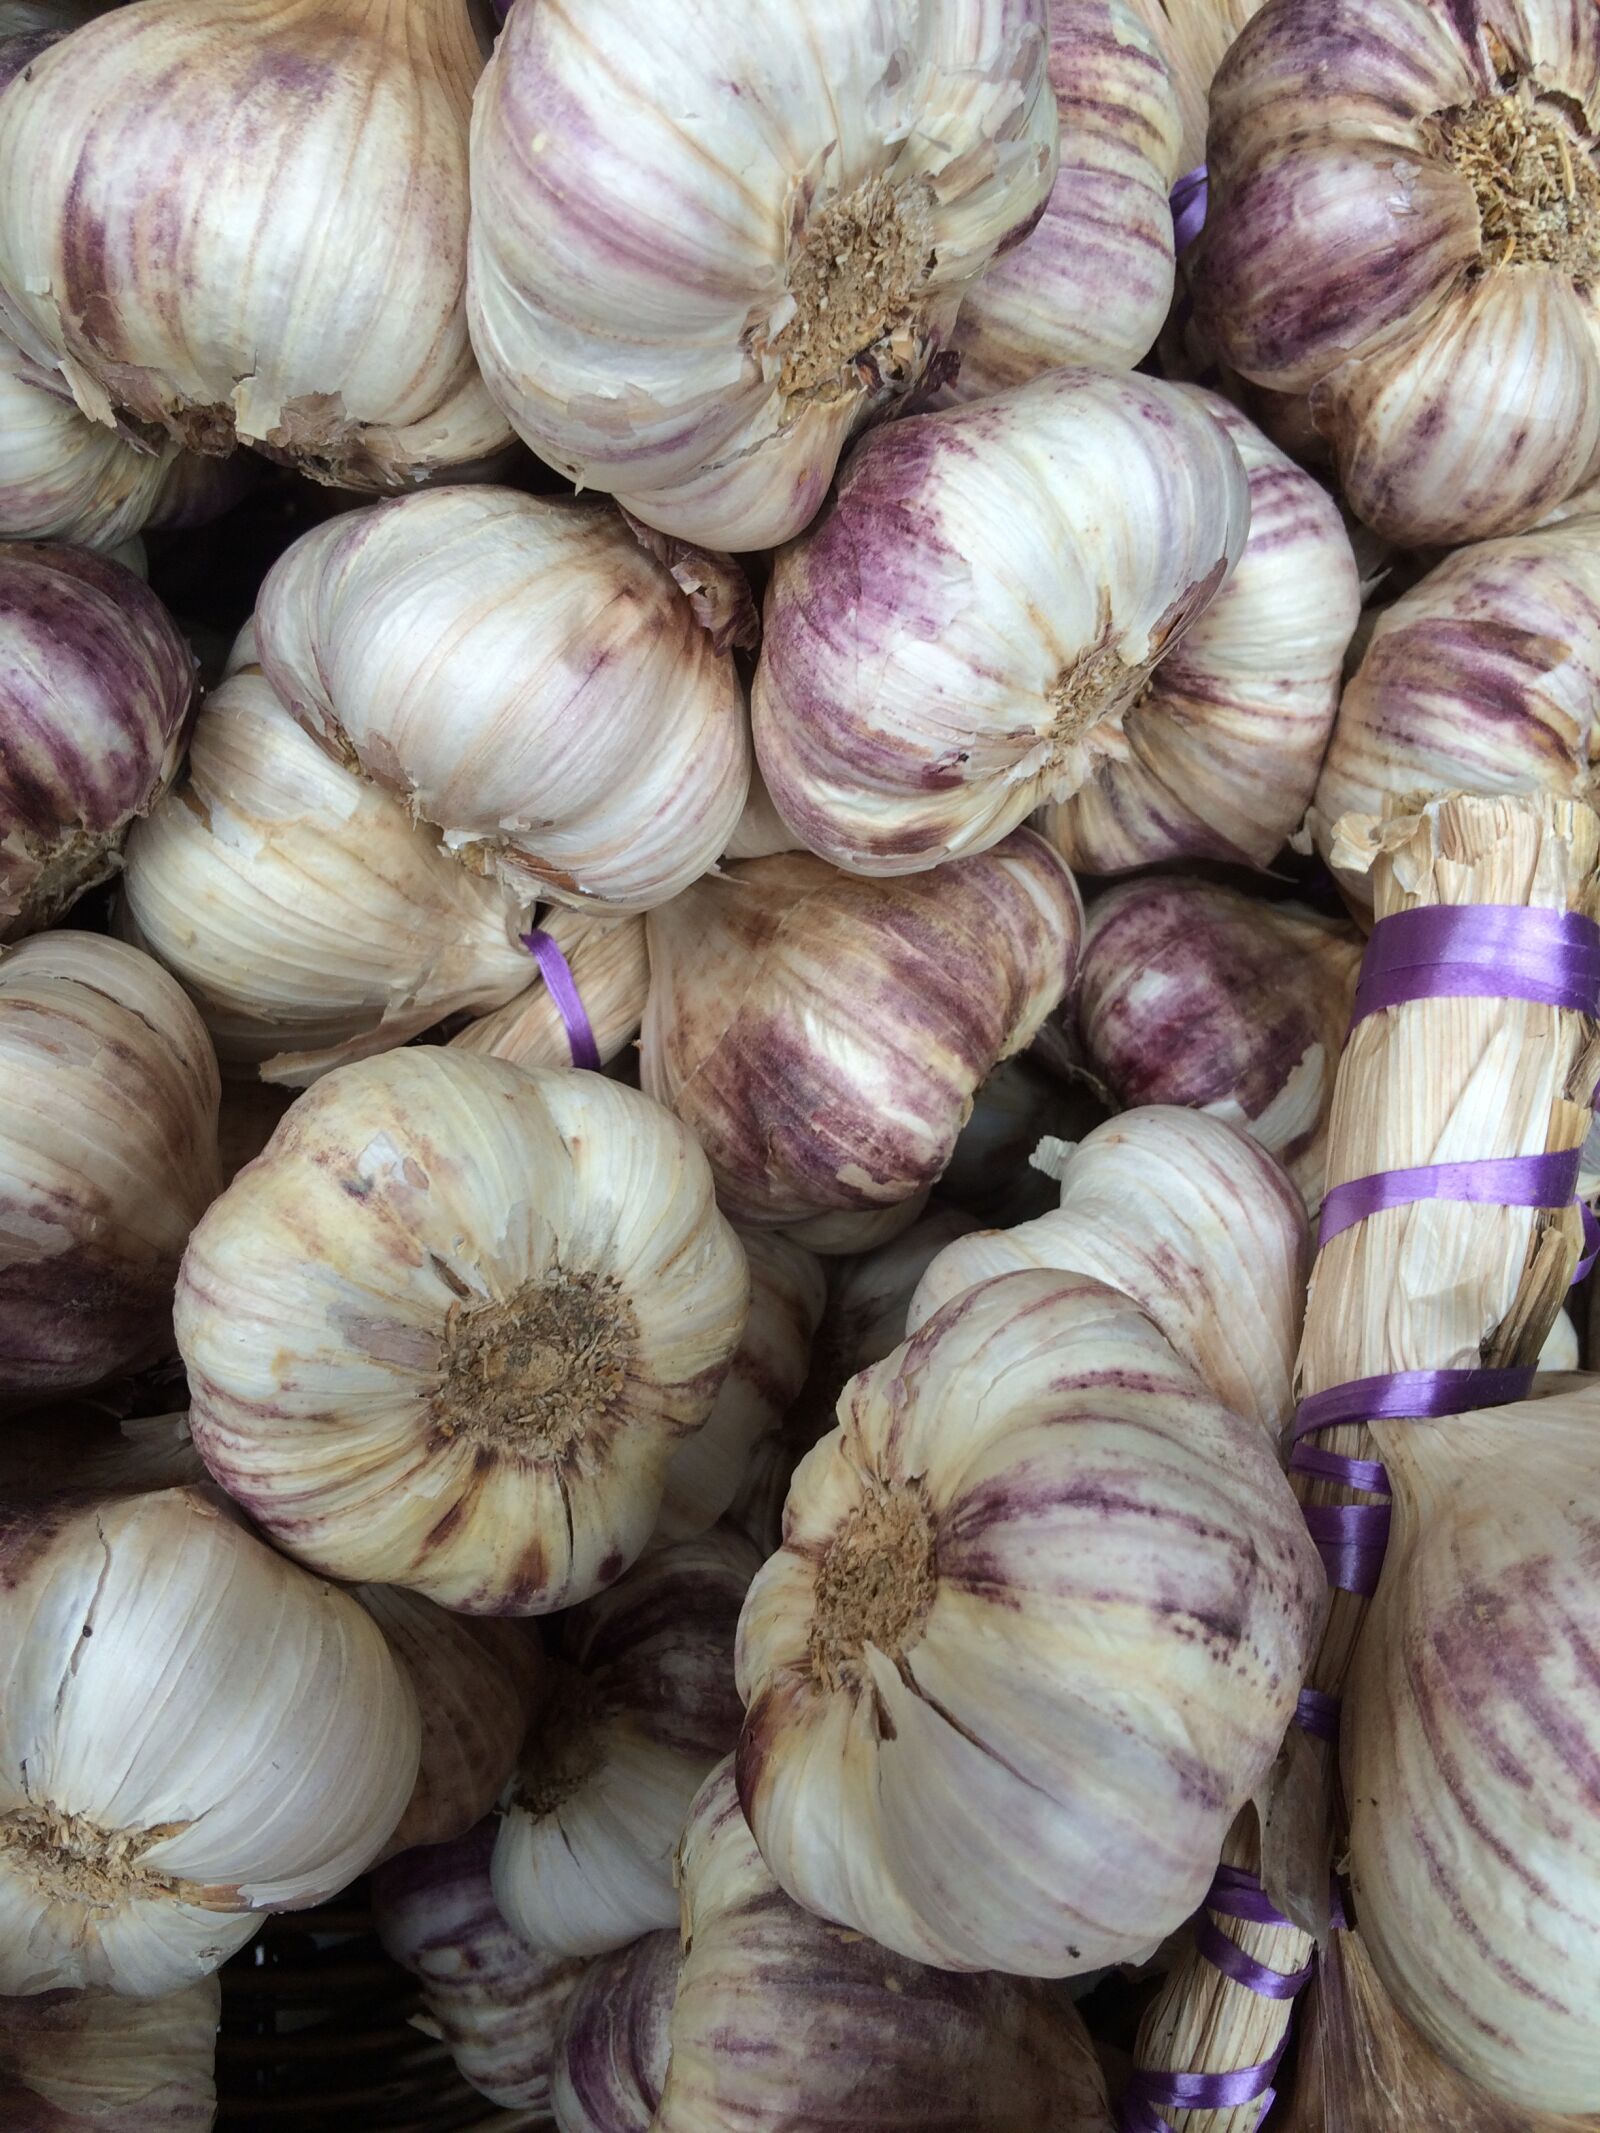 Apple iPhone 5s sample photo. Garlic, garlic bulb, bulb photography